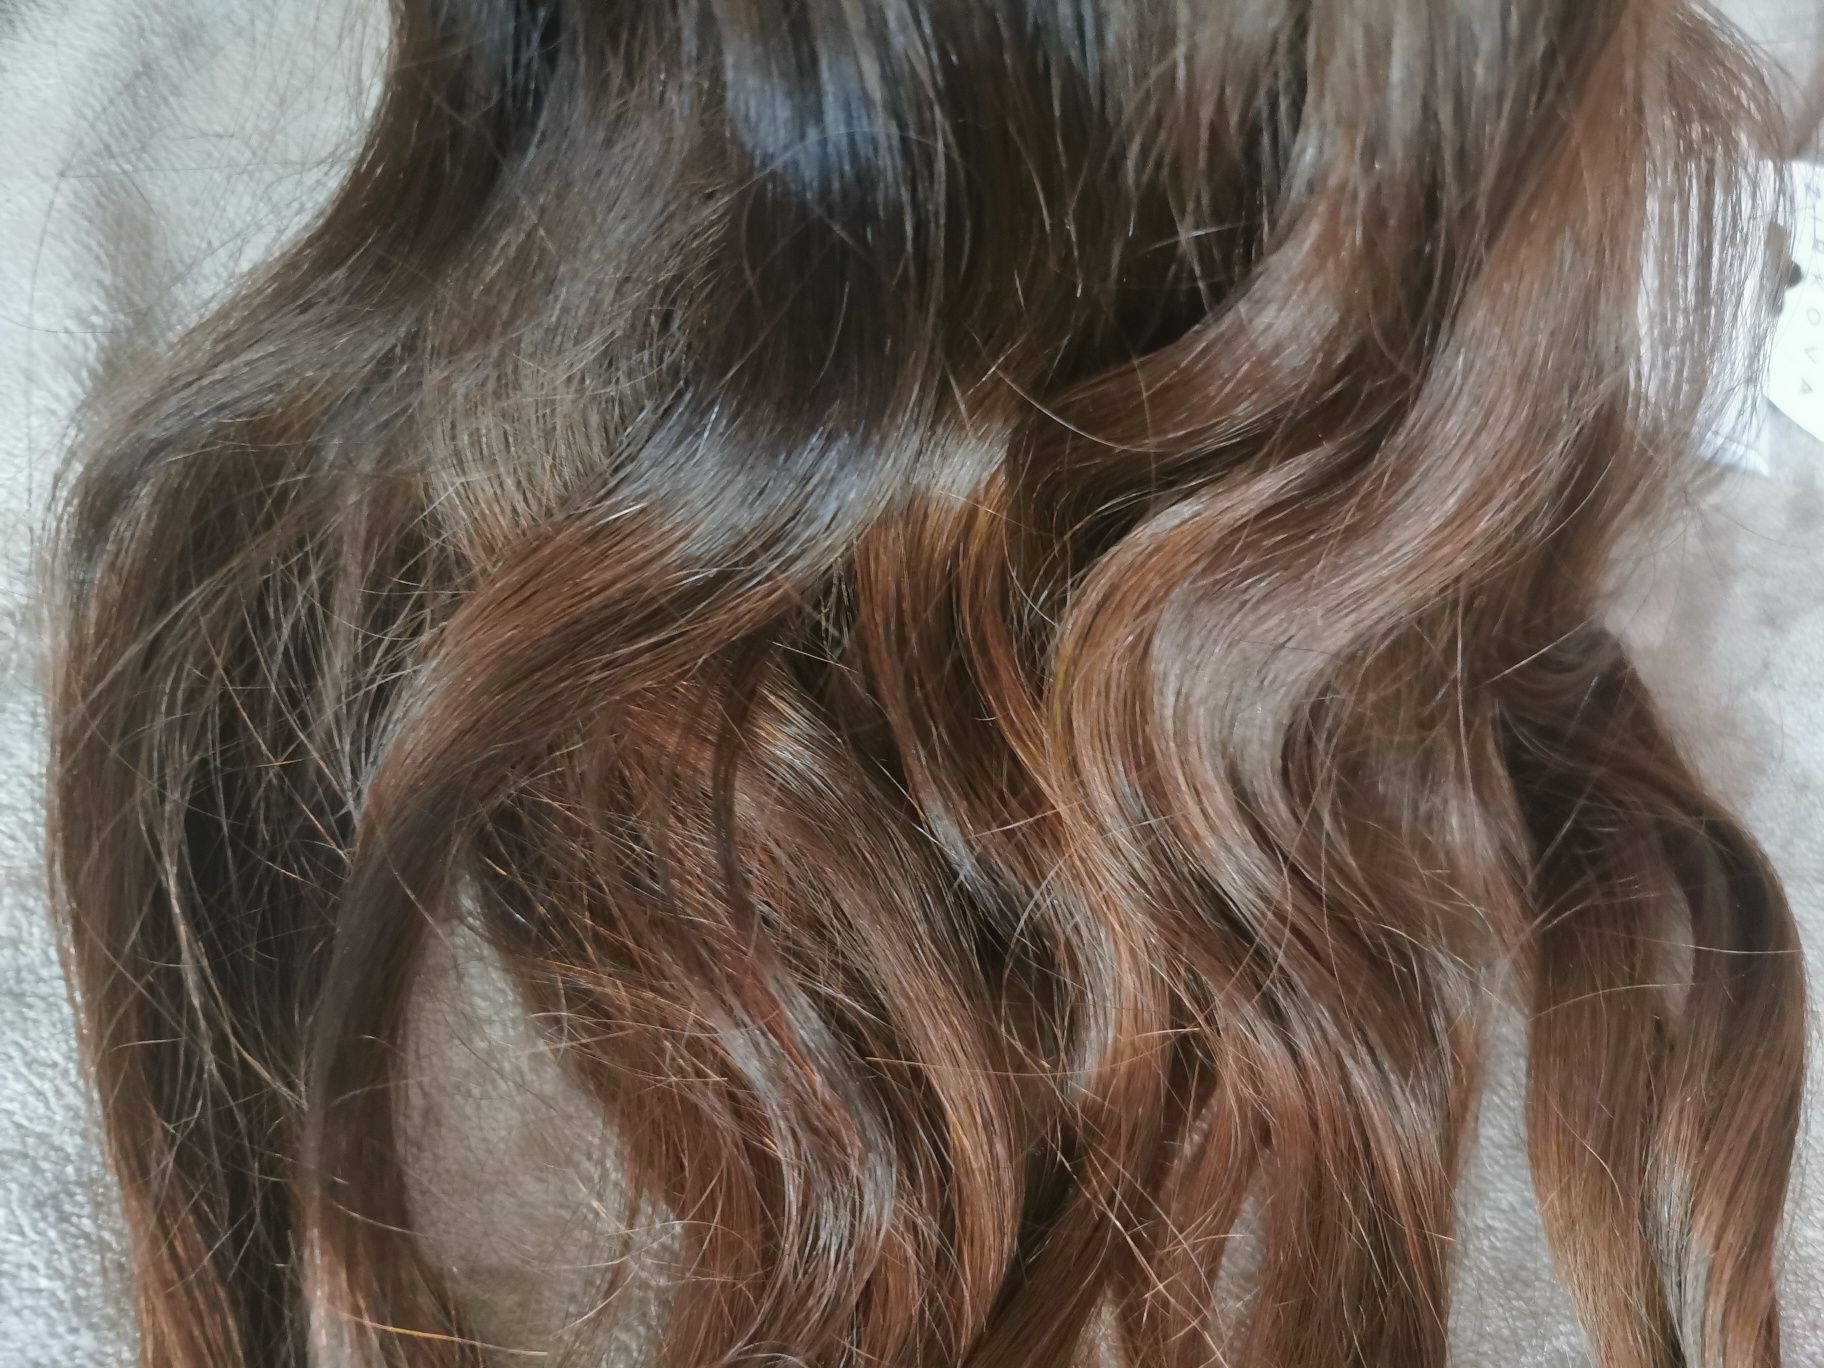 Натуральные славянские волосы (трессы) шоколад 45-50 см 100 гр